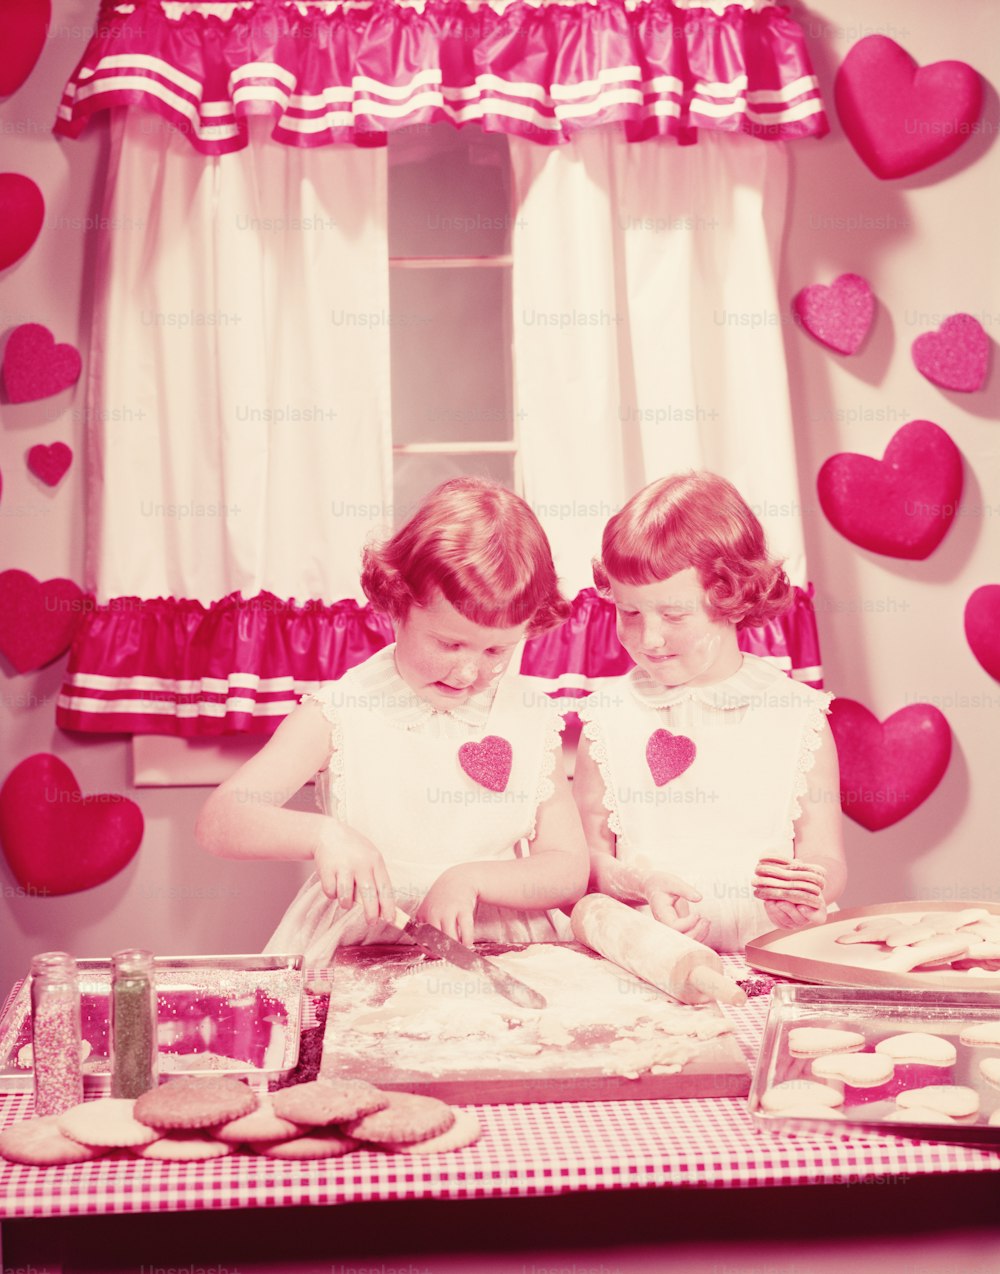 ÉTATS-UNIS - Circa 1950s : Filles jumelles dans la cuisine, préparant des biscuits de la Saint-Valentin.